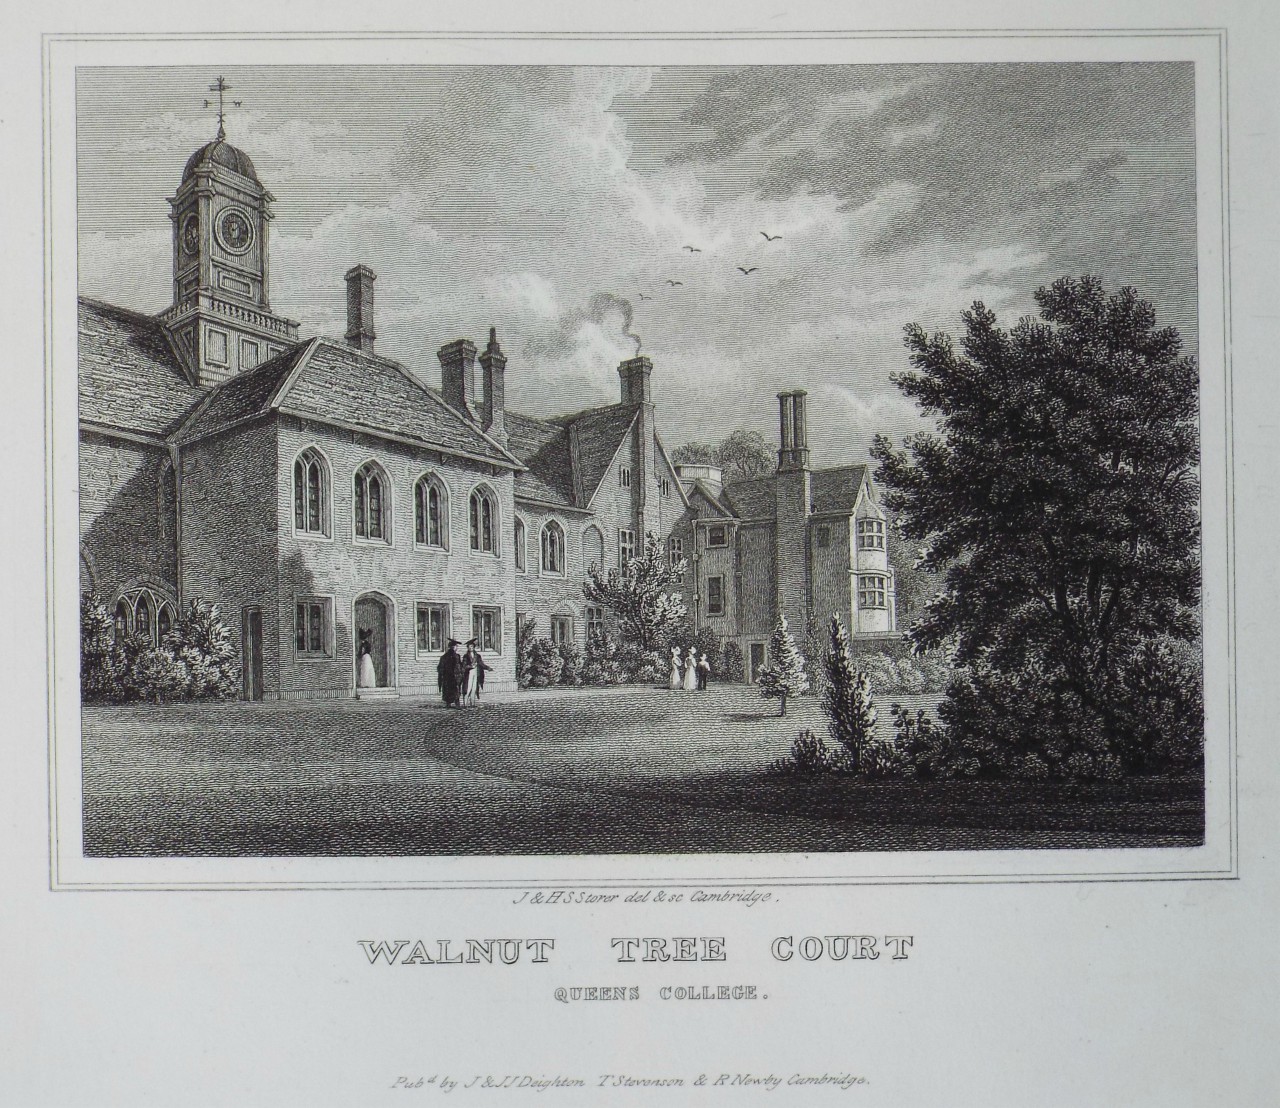 Print - Walnut Tree Court Queens College. - Storer